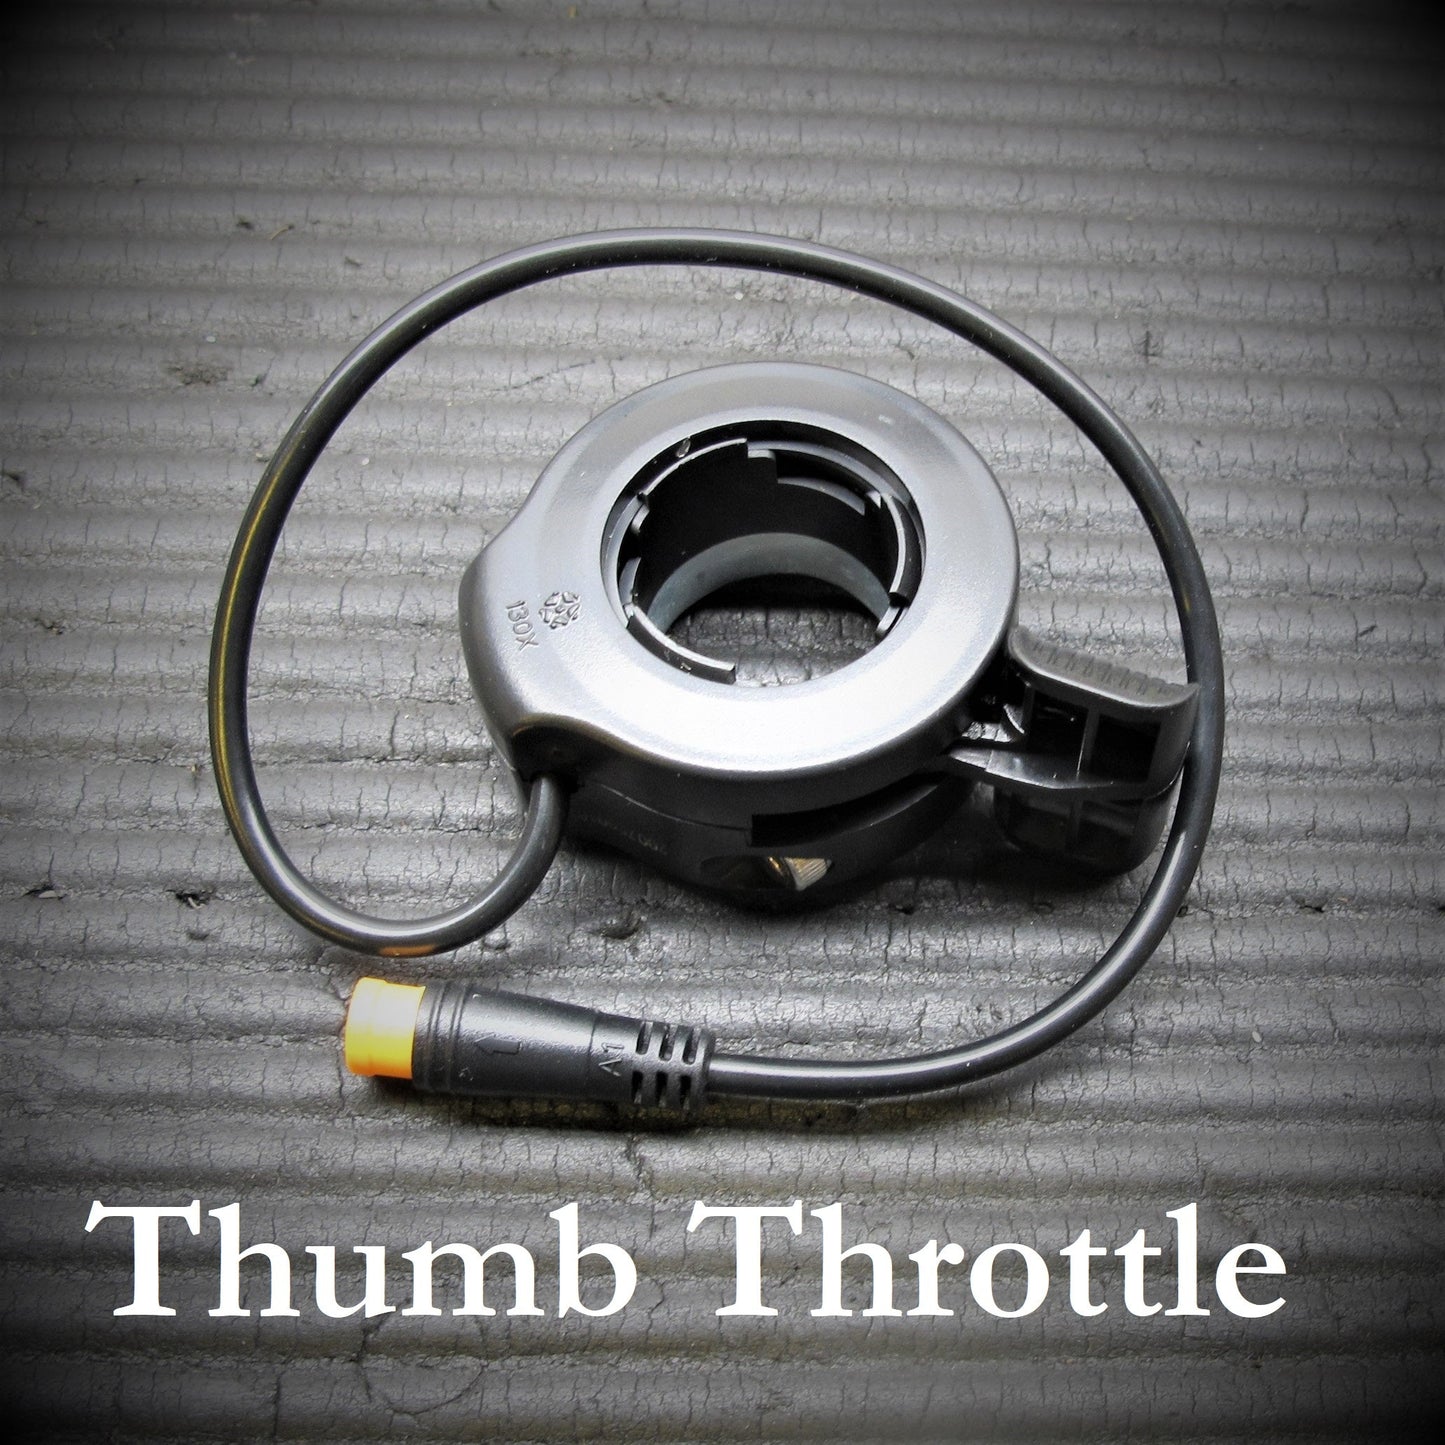 500W Rear (Cassette) Geared Hub Motor Kit